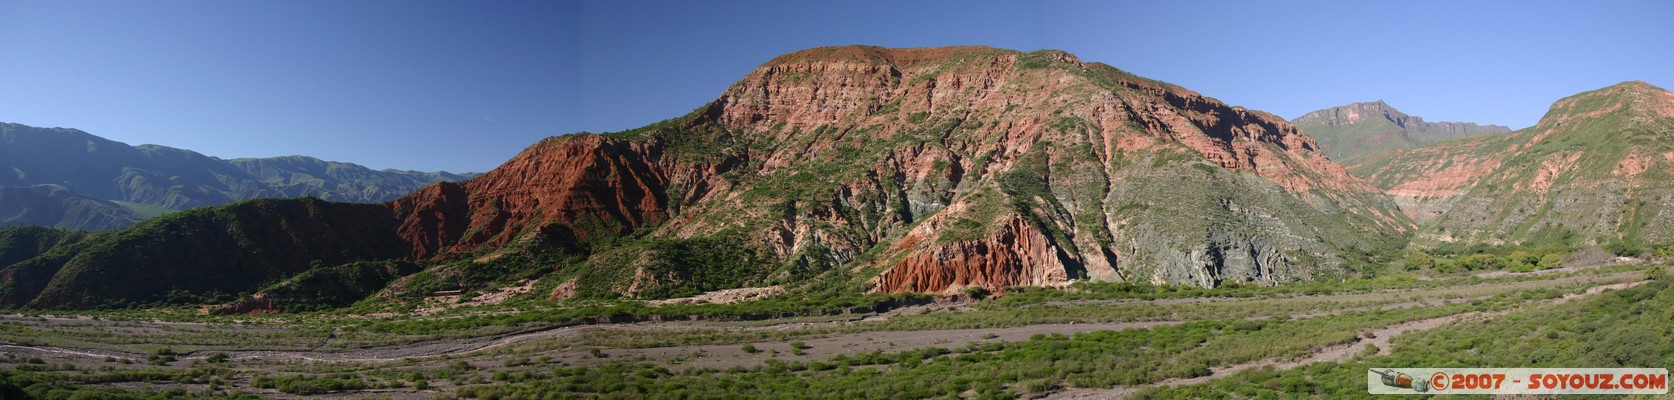 Ruta 33 - Quebrada de Escoipe - vue panoramique
